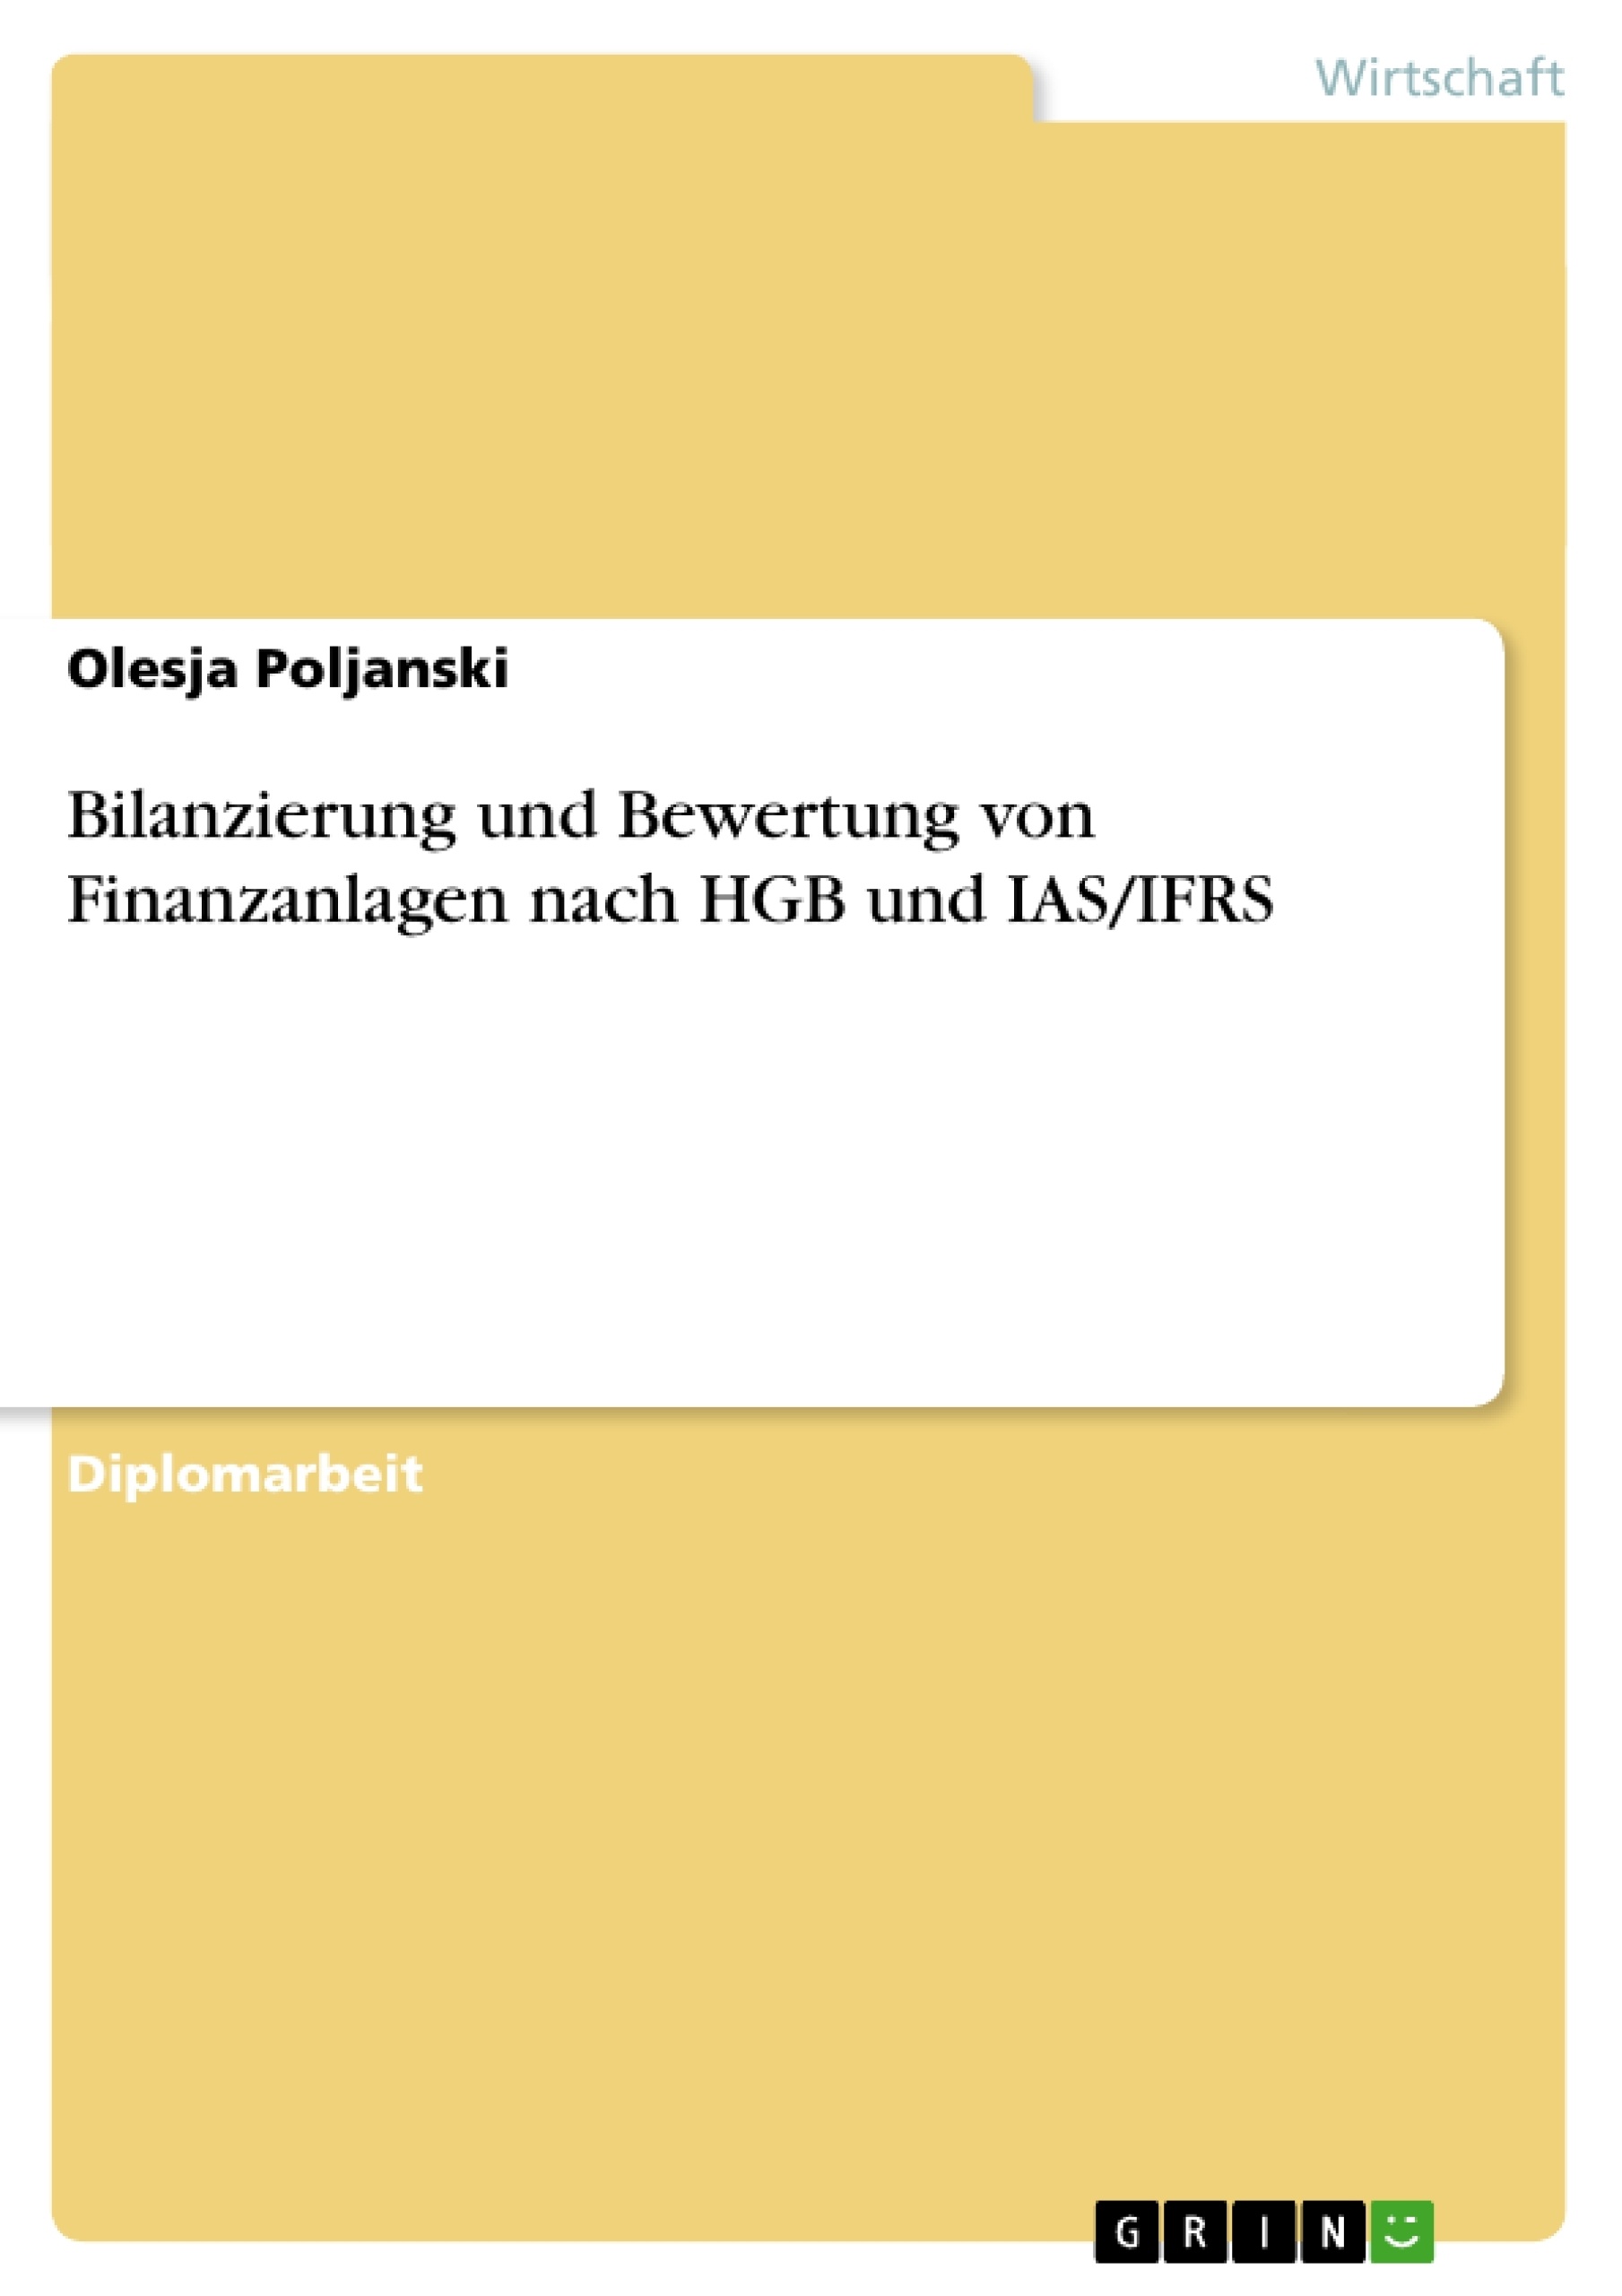 Titre: Bilanzierung und Bewertung von Finanzanlagen nach HGB und IAS/IFRS